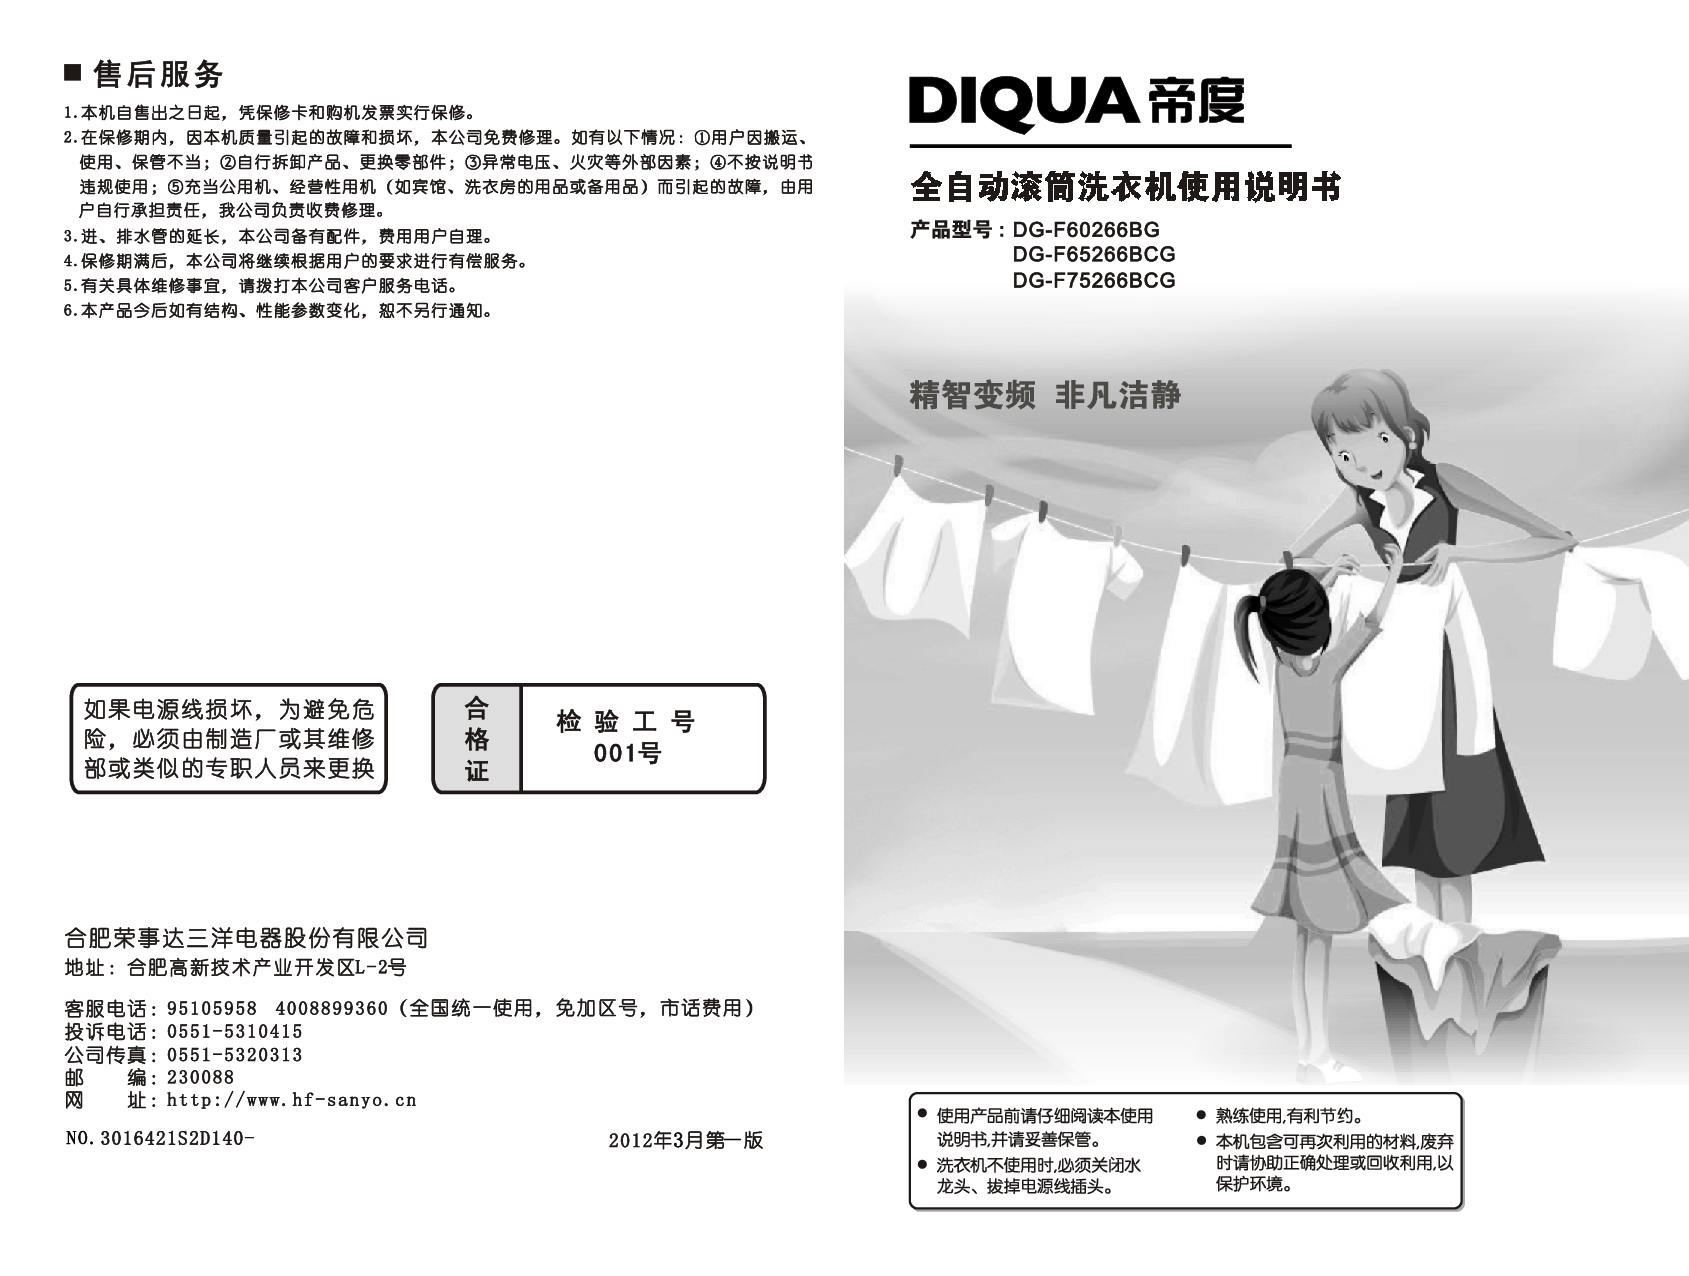 帝度 Diqua DG-F60266BG 使用说明书 封面